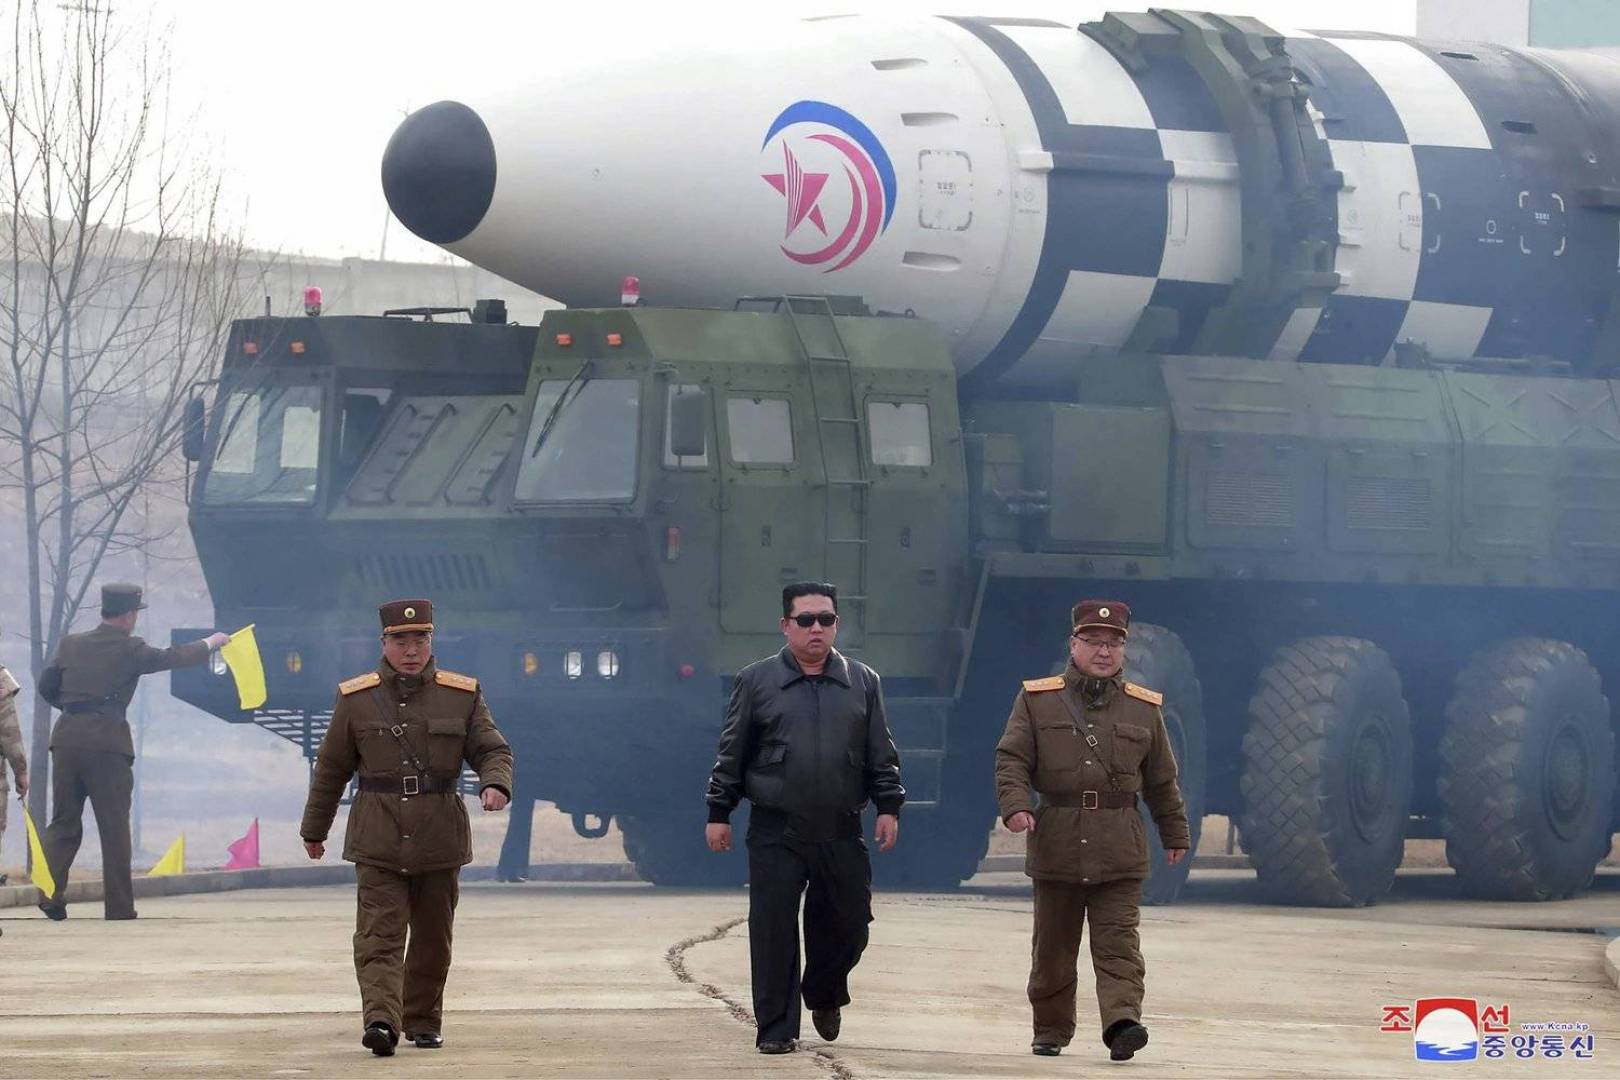 كوريا الجنوبية ترفض ادعاءات كوريا الشمالية حول اختبار الصواريخ